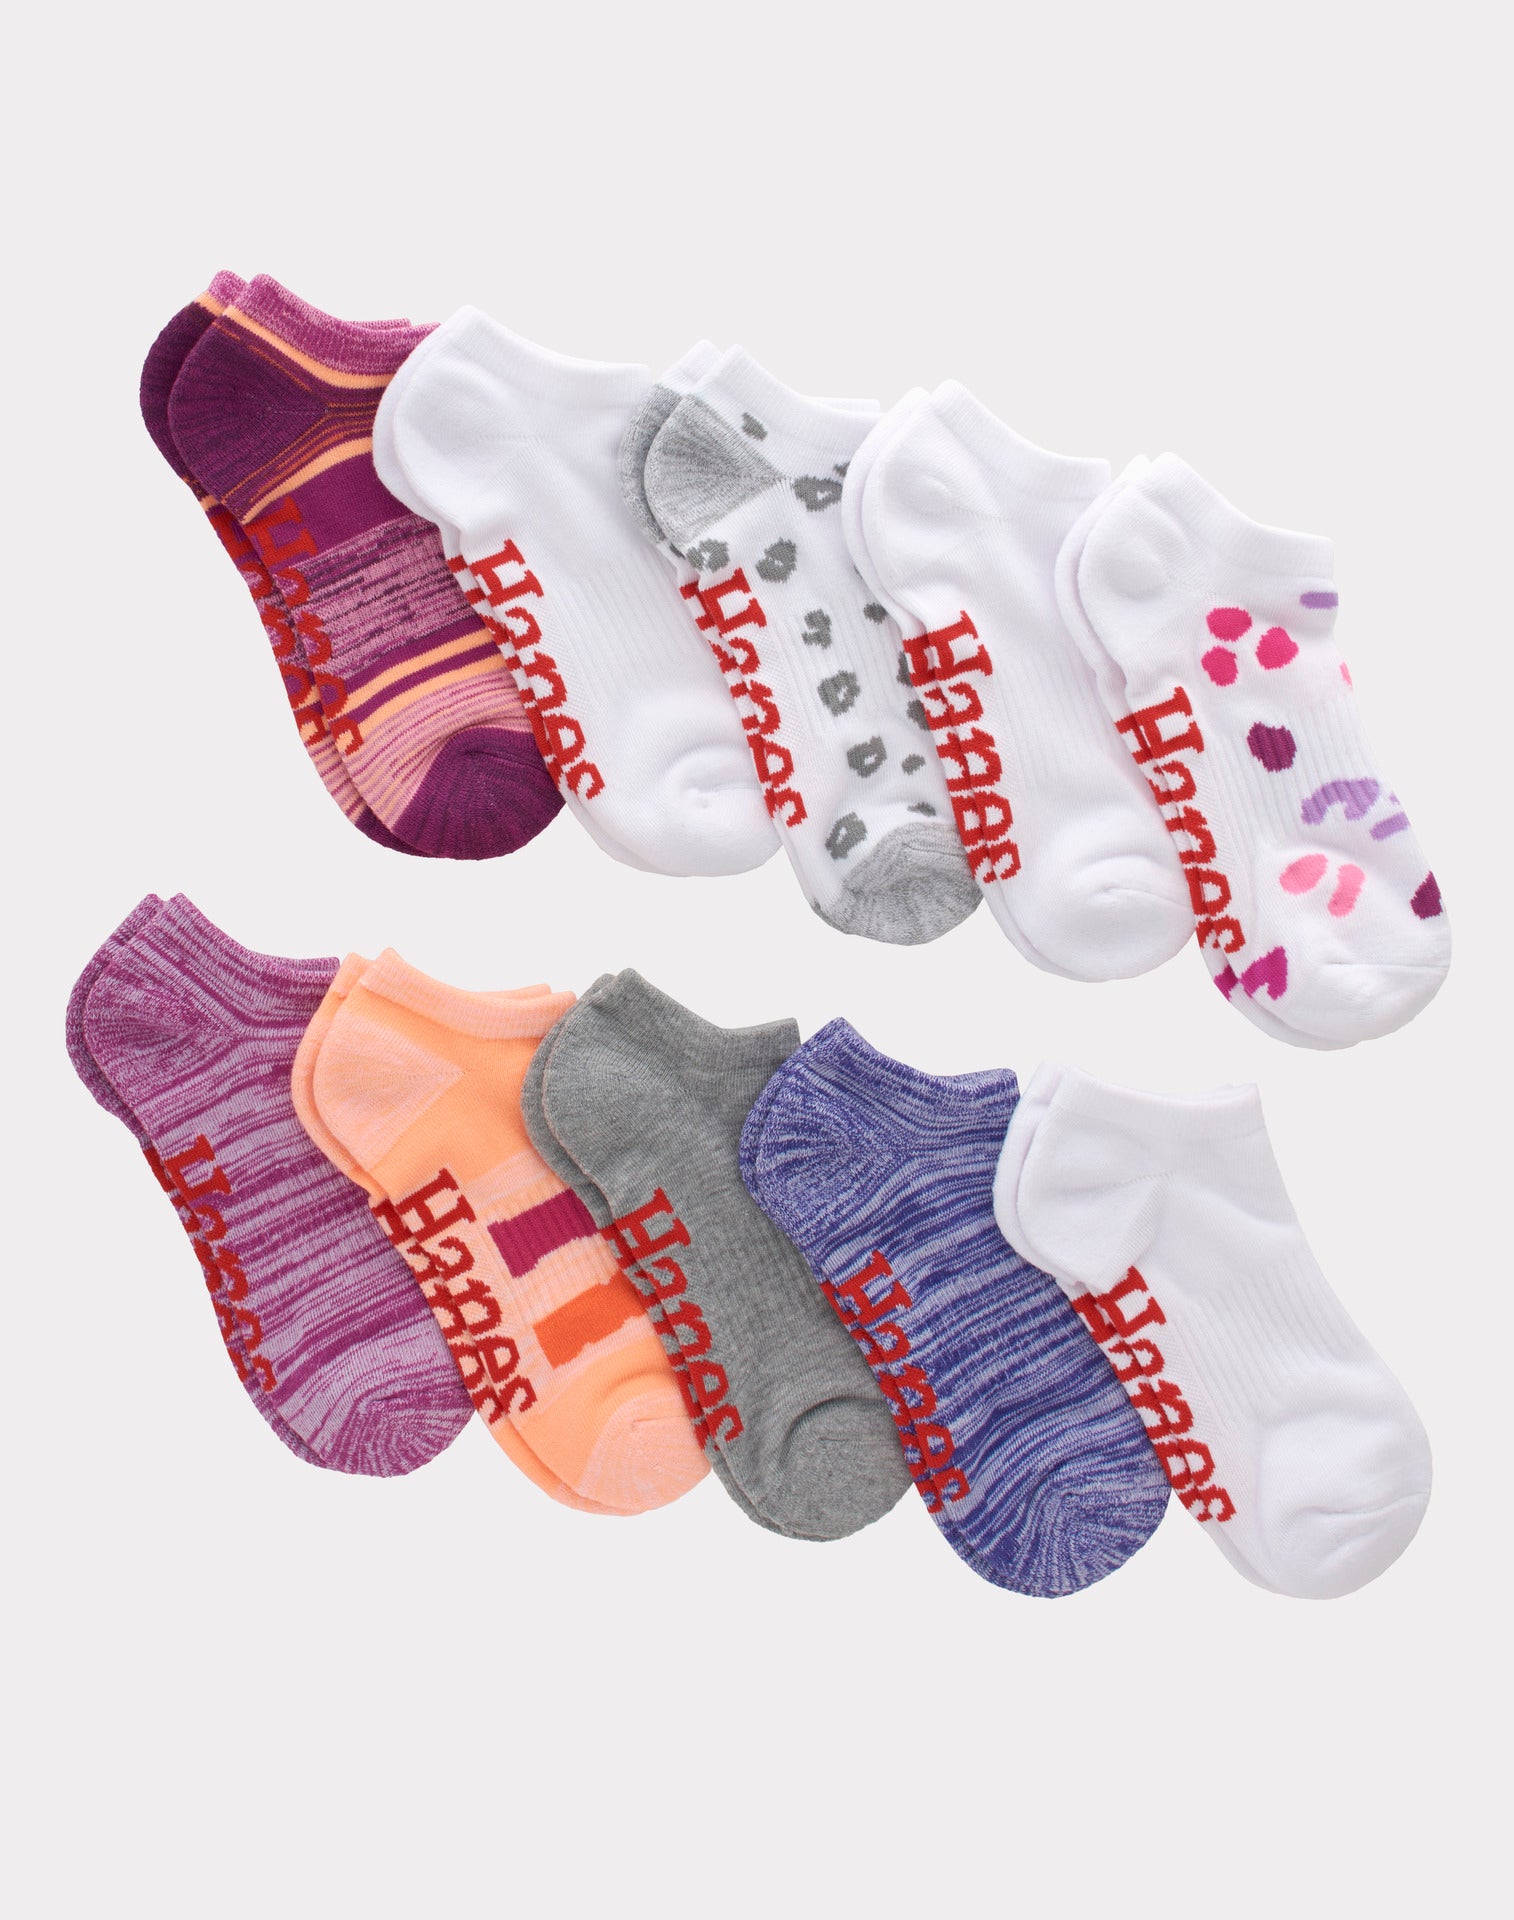 10 pairs of moisture-wicking socks